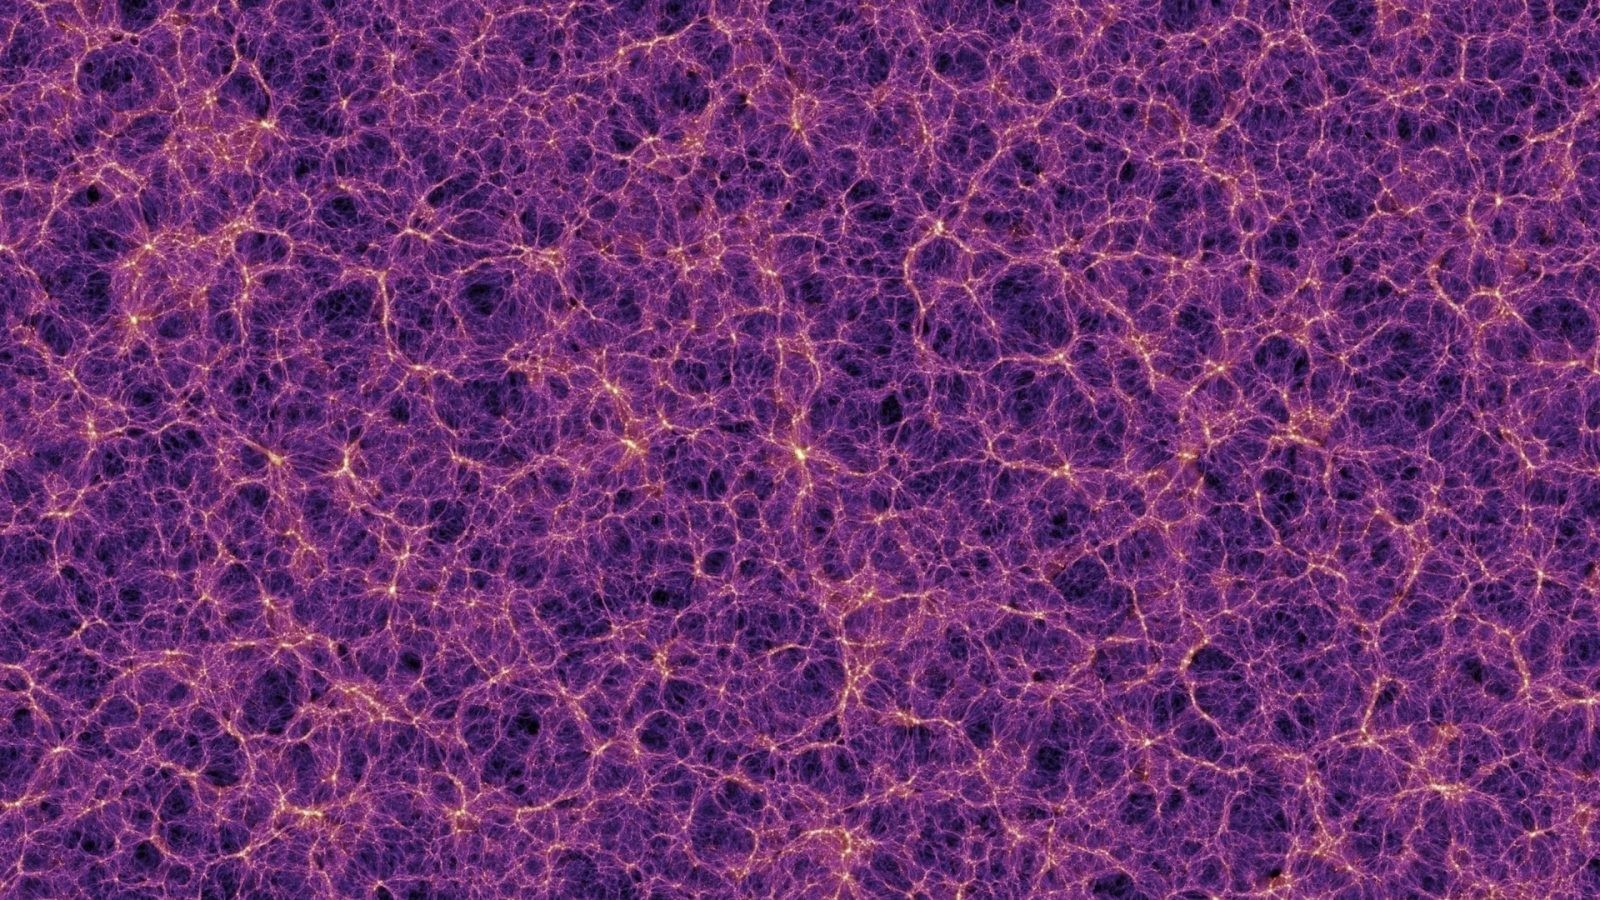 Supergromada galaktyk Einasto. Naukowcy odkrywają strukturę kosmiczną o imponujących rozmiarach